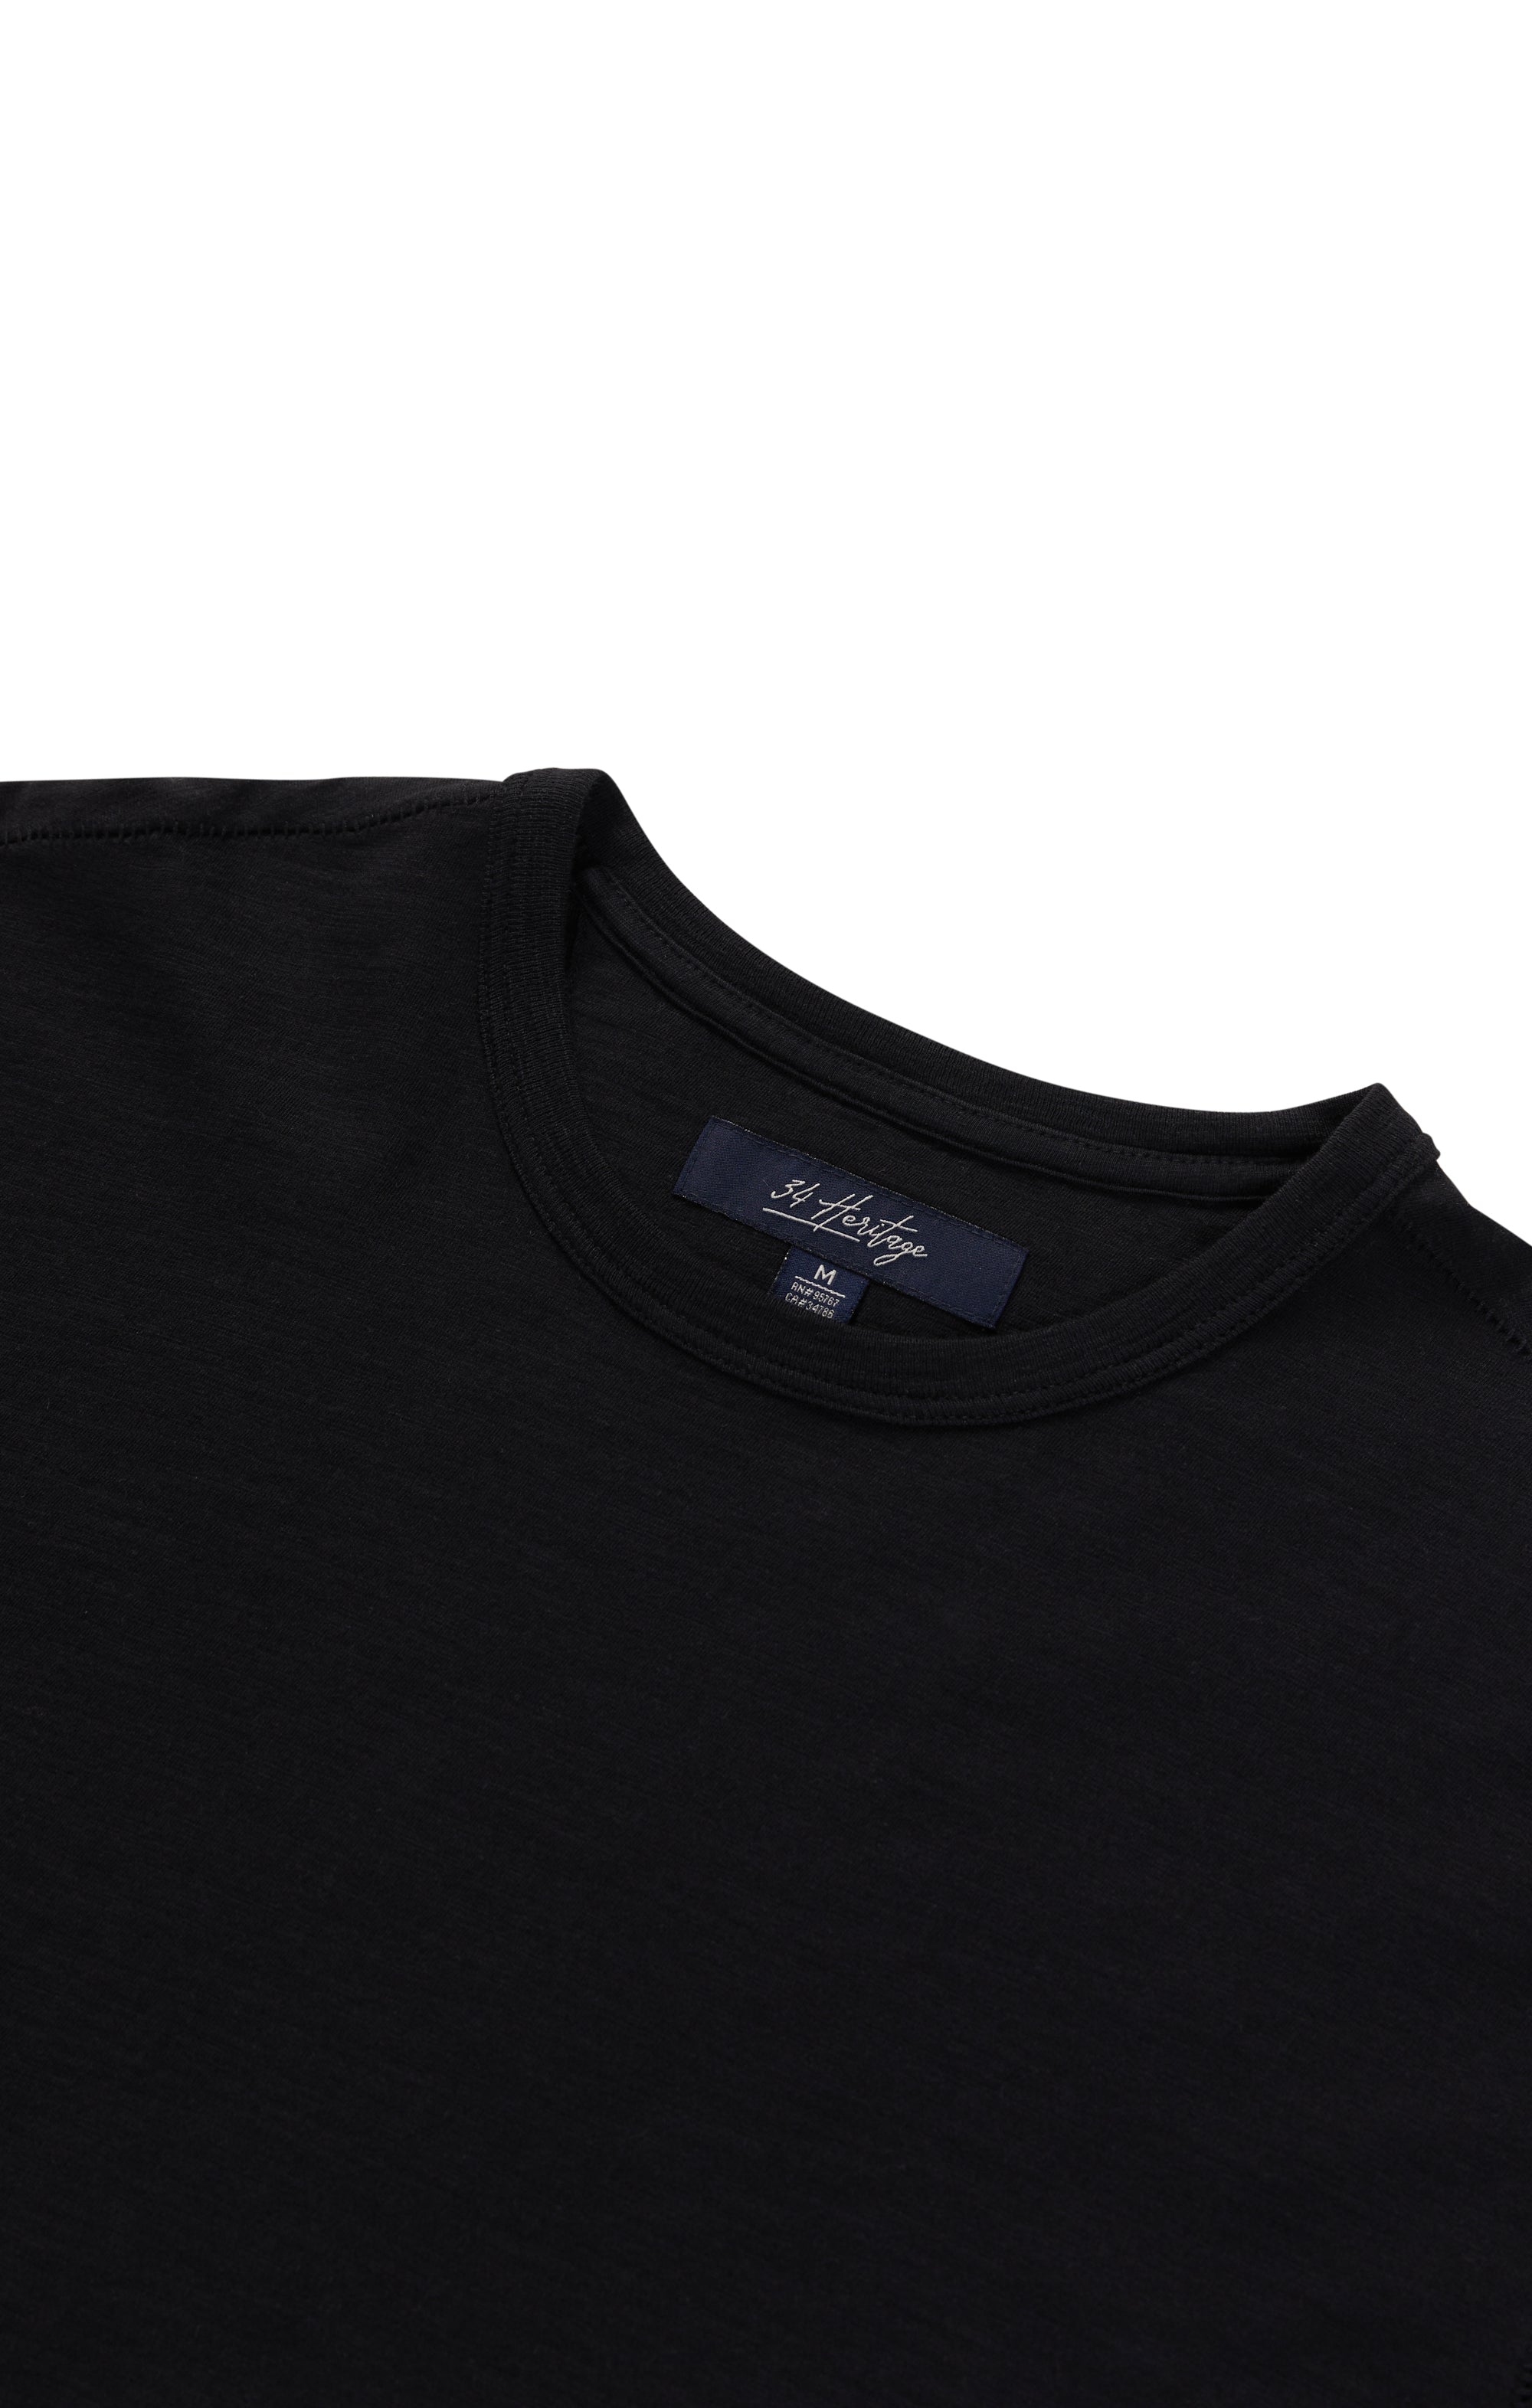 Slub Crew Neck T-Shirt in Black Image 10